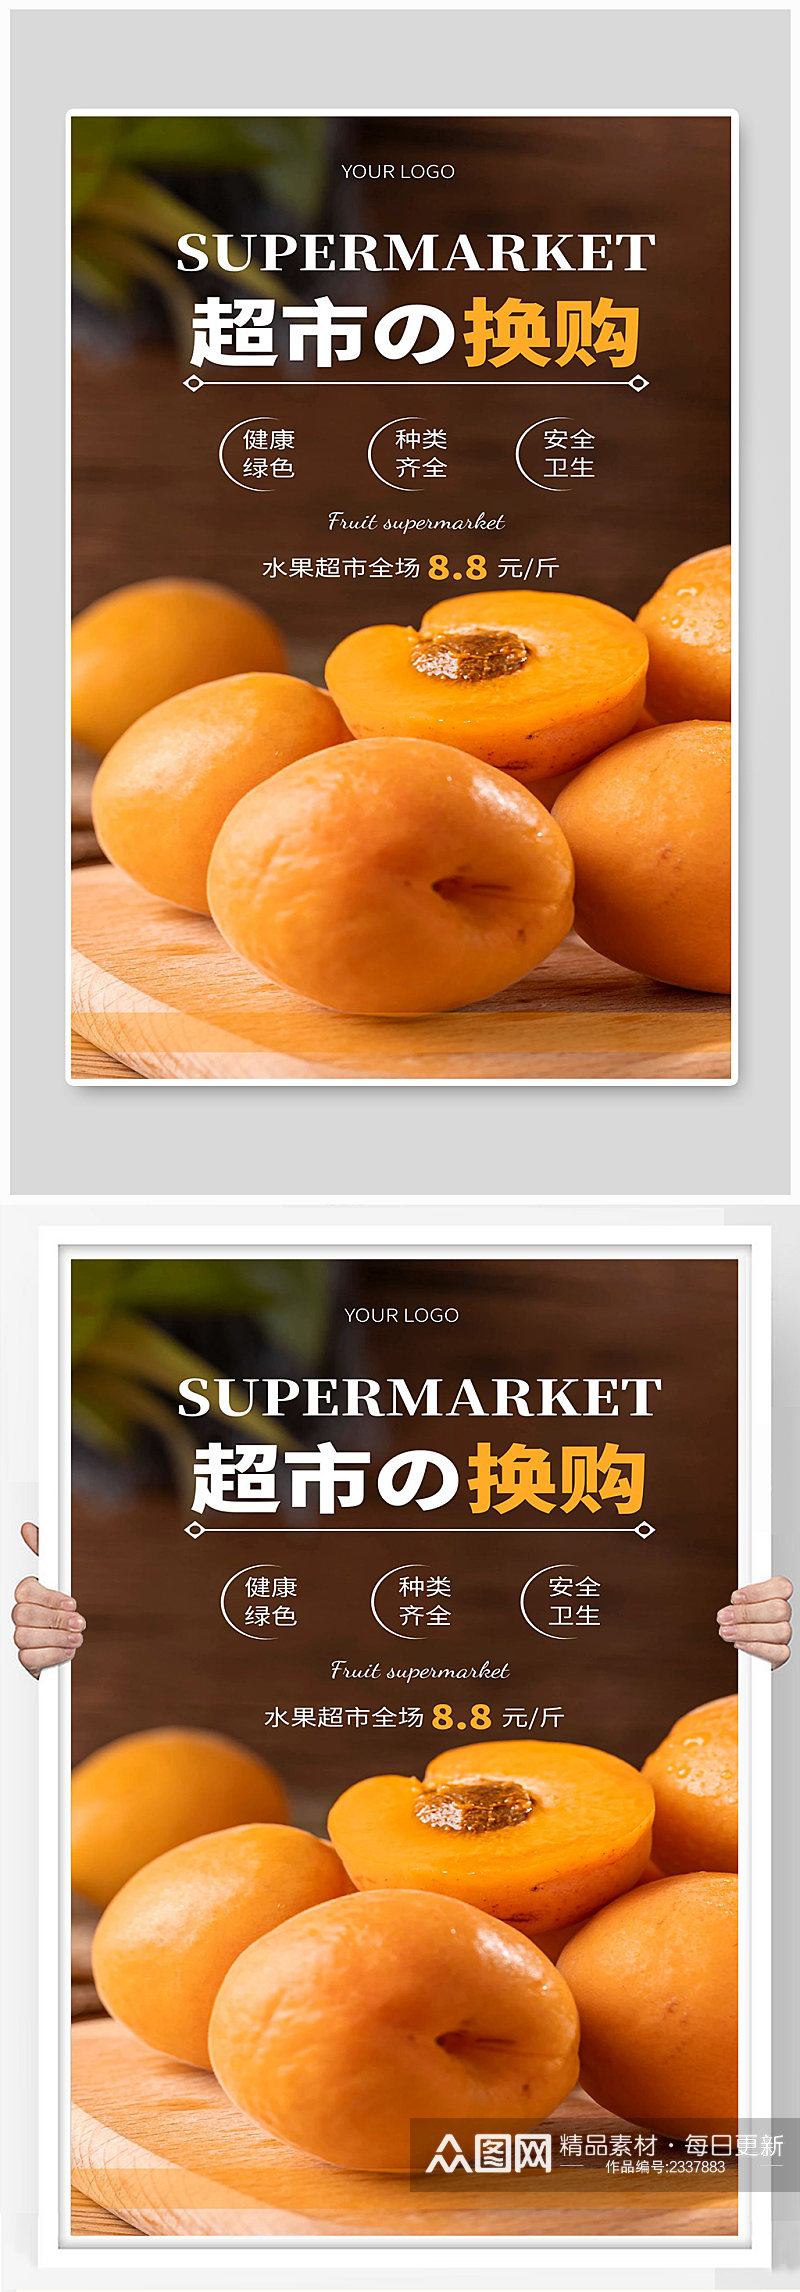 水果超市全场宣传海报设计素材